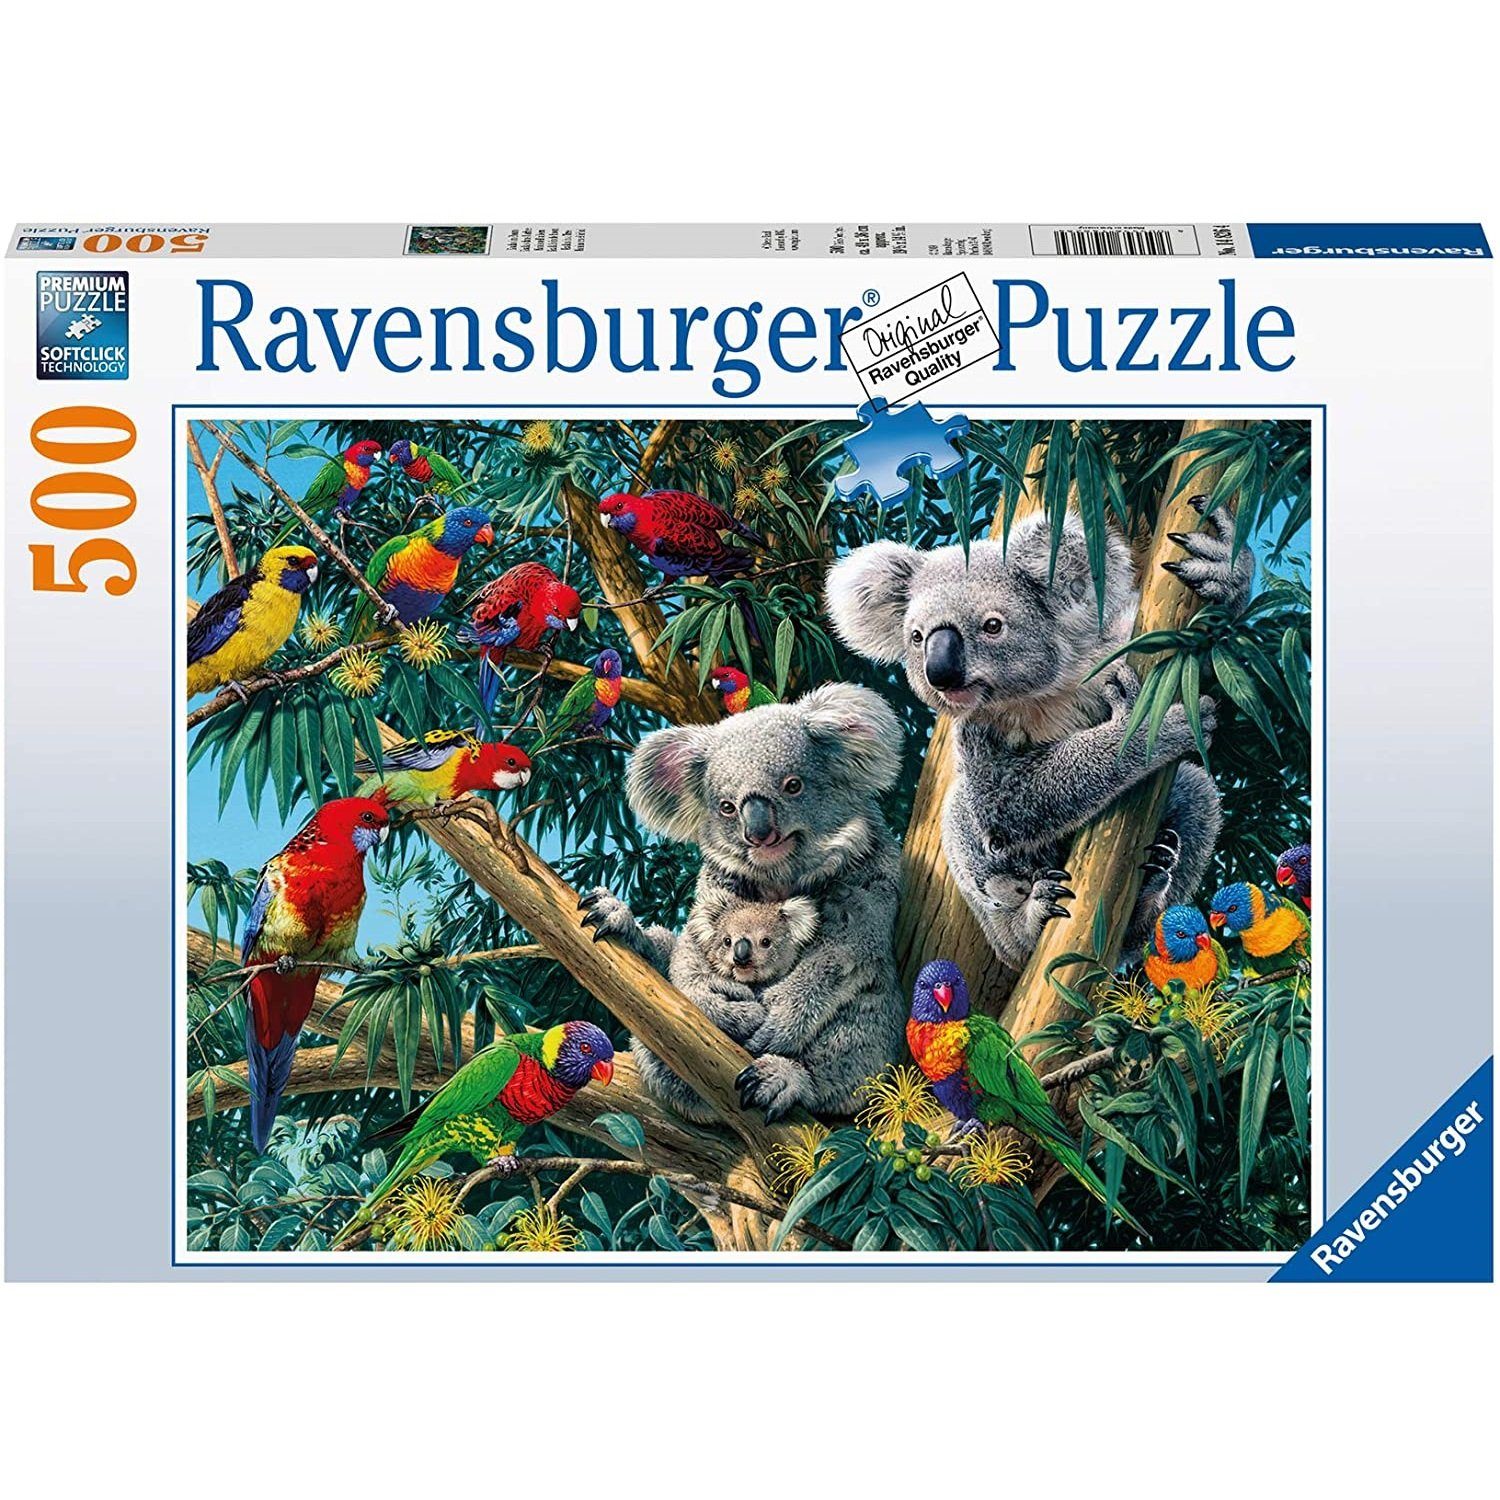 500 Puzzleteile - Koalas Baum, Teile Ravensburger Puzzle Ravensburger im Puzzle, 500